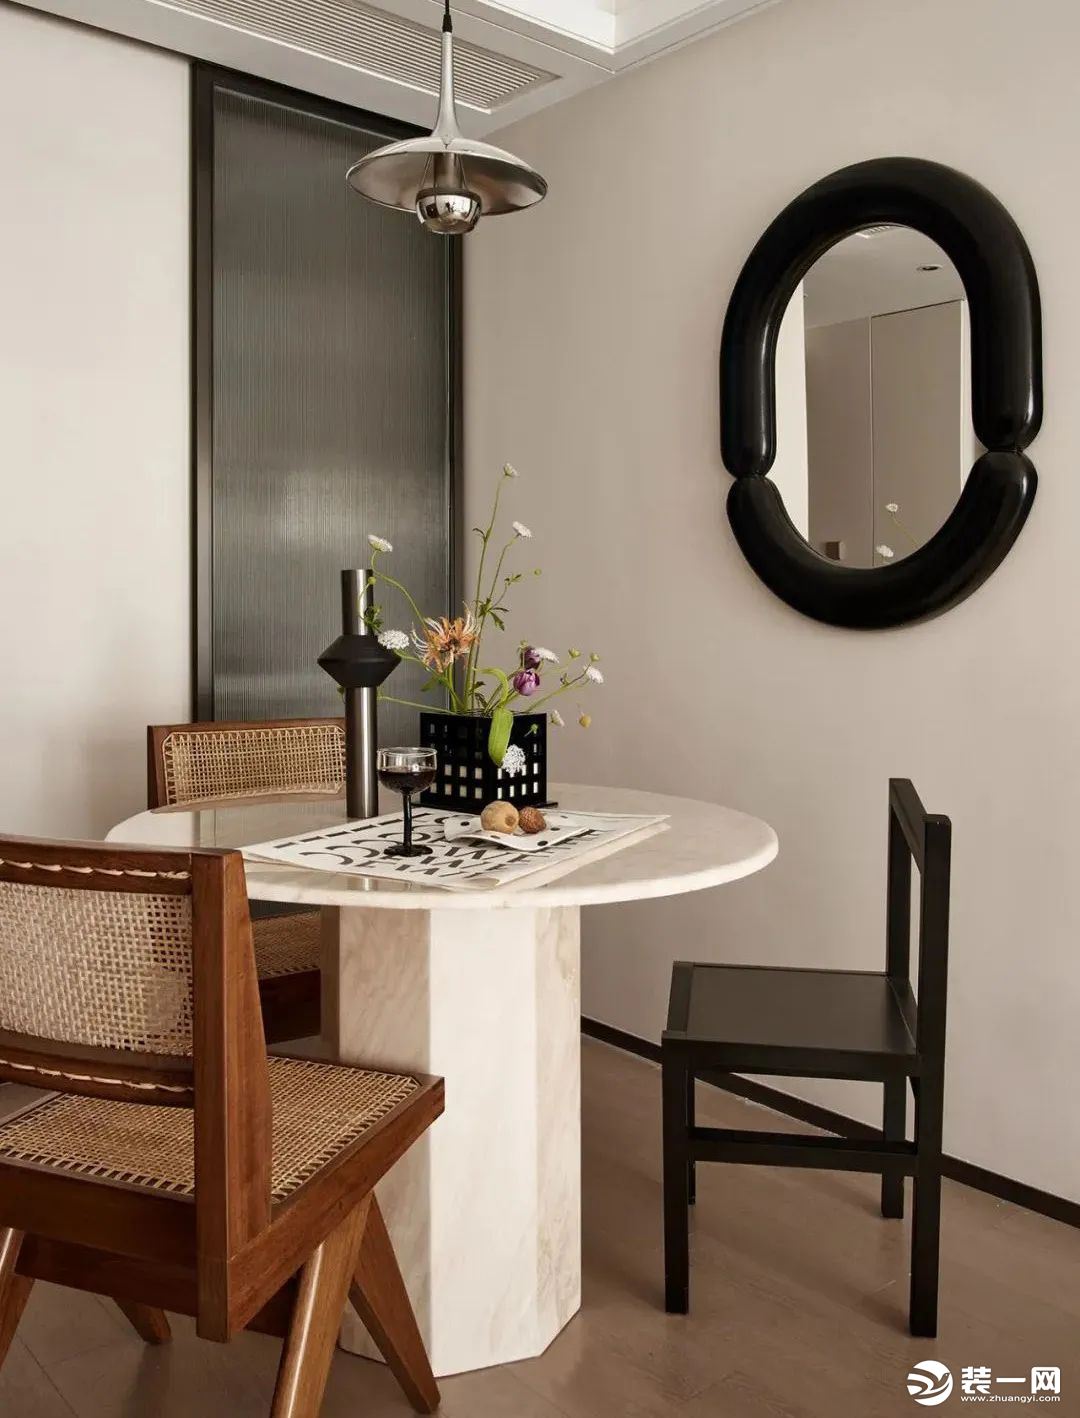 布置奶白色艺术圆桌，搭配藤编元素的餐椅，上方以一盏电镀银的飞碟款吊灯点缀，墙面以墨色圆镜勾勒单调的背